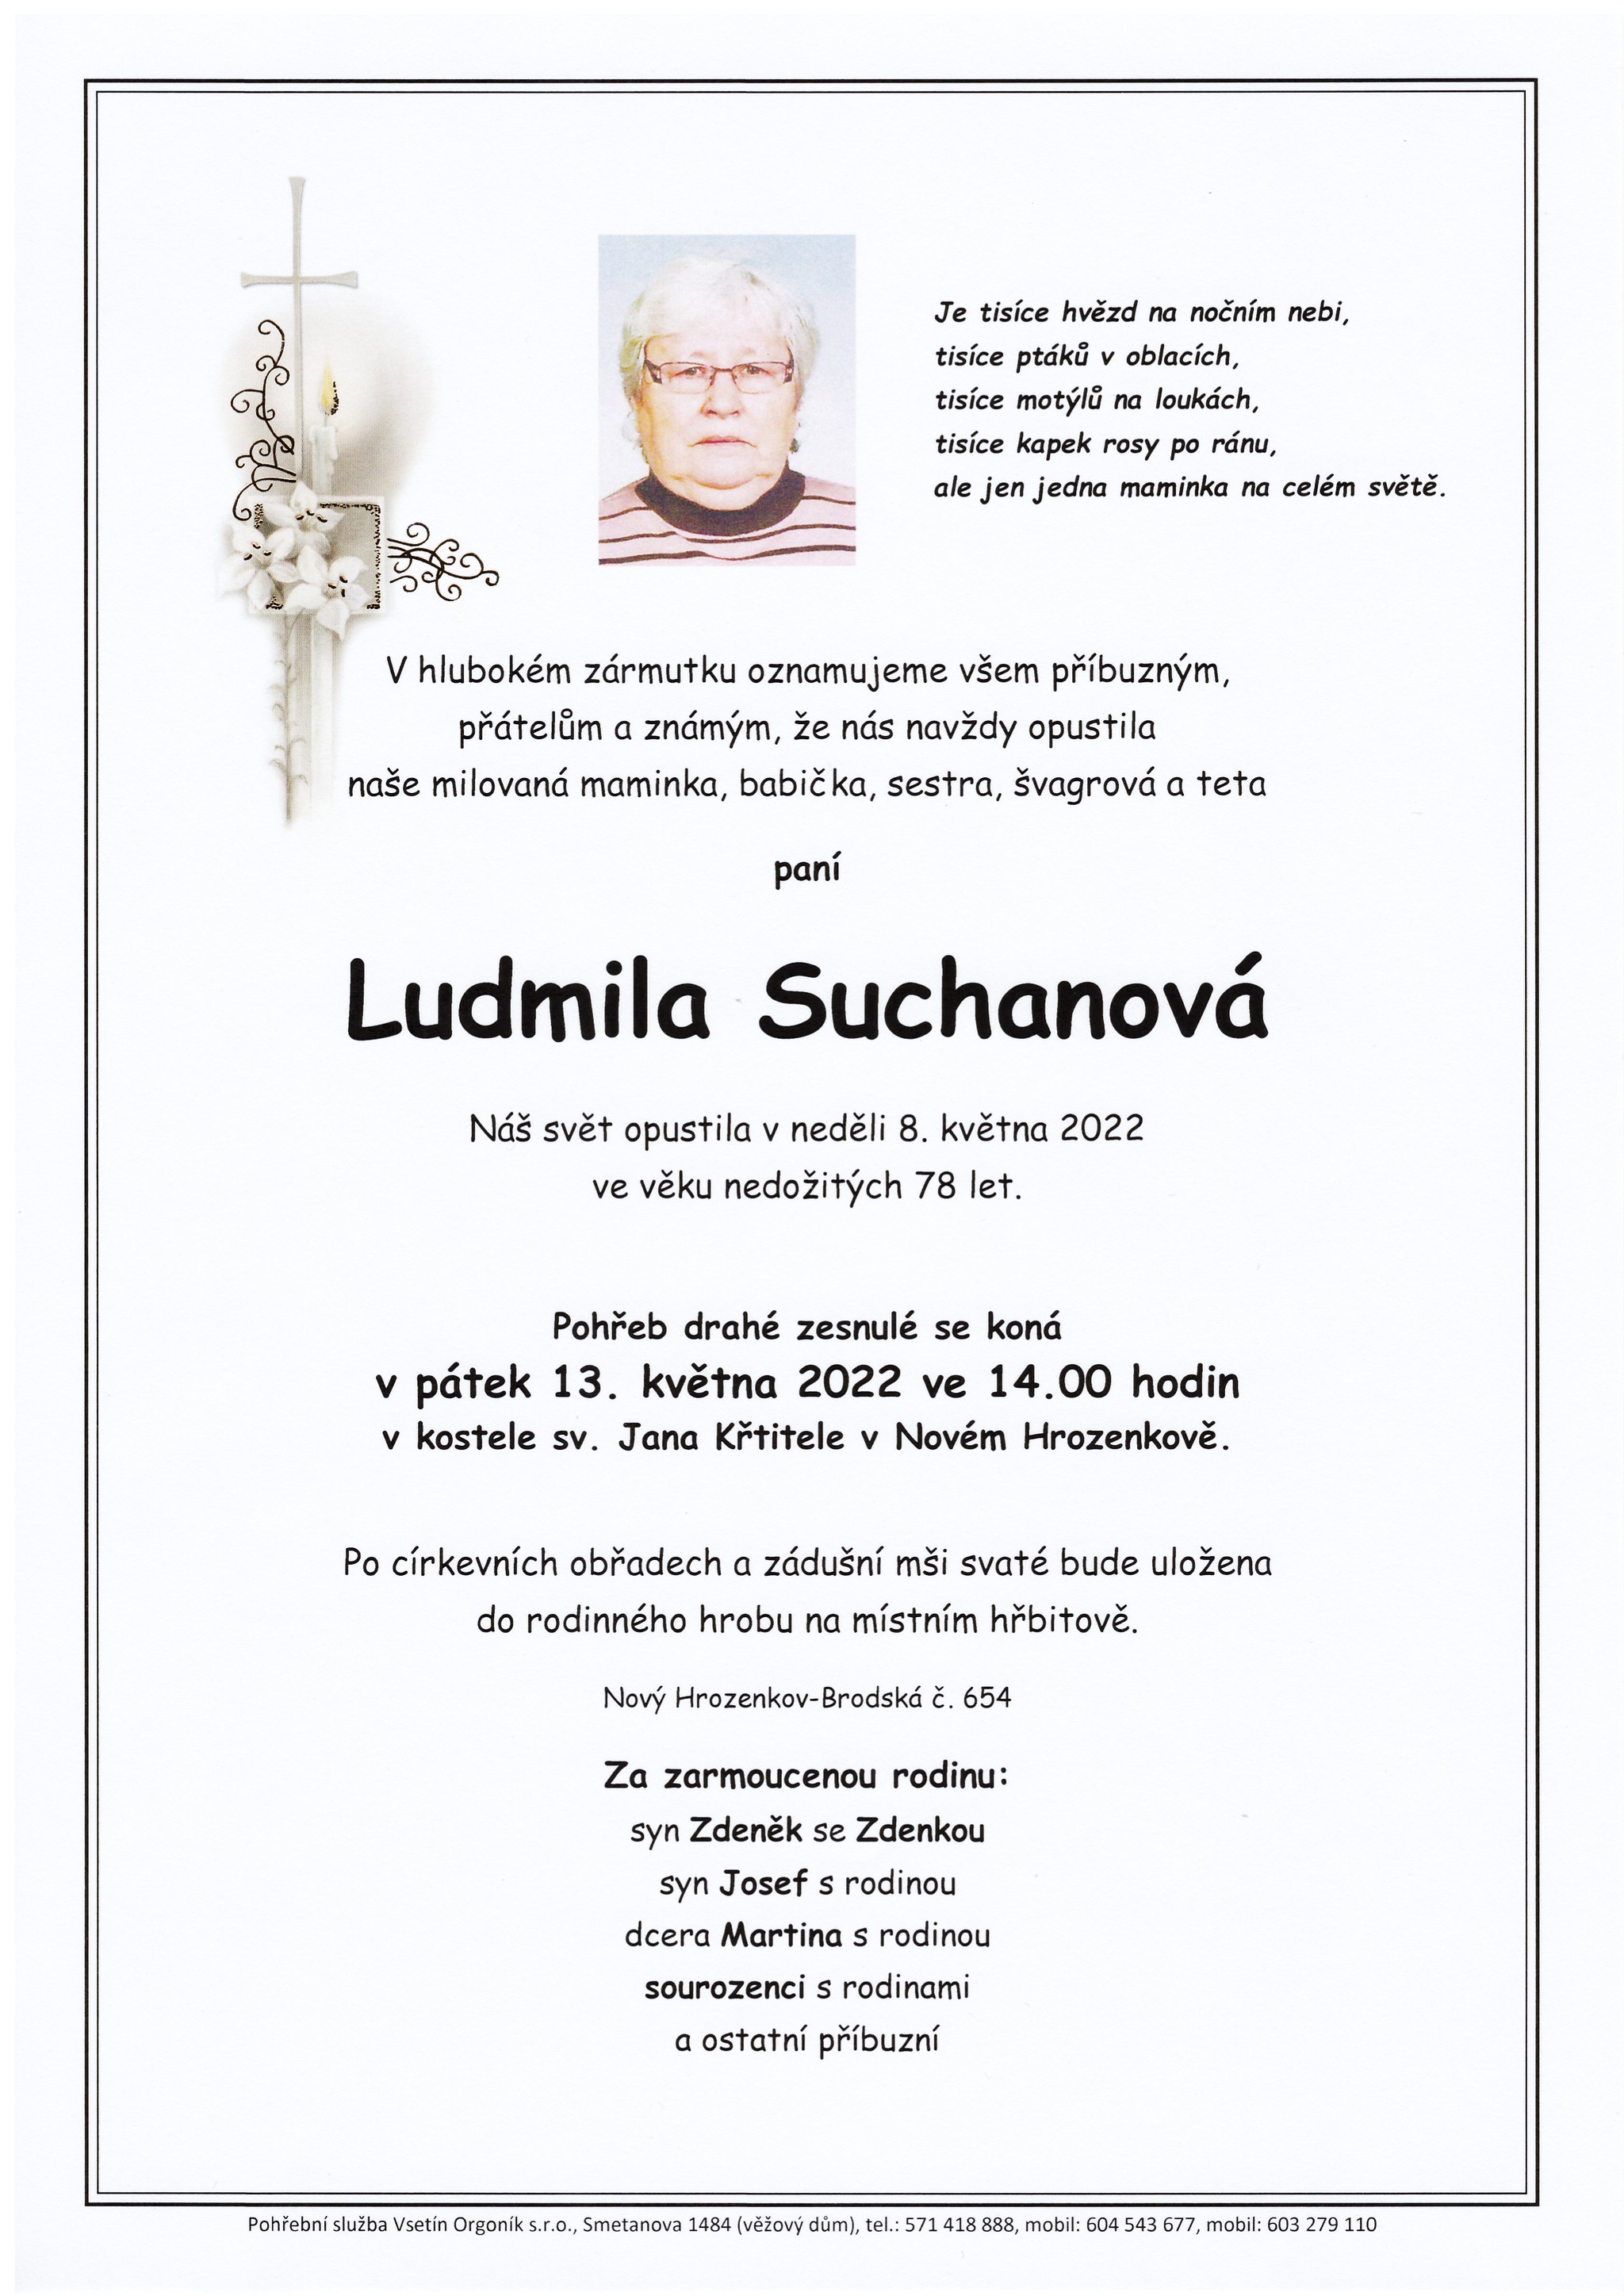 Ludmila Suchanová